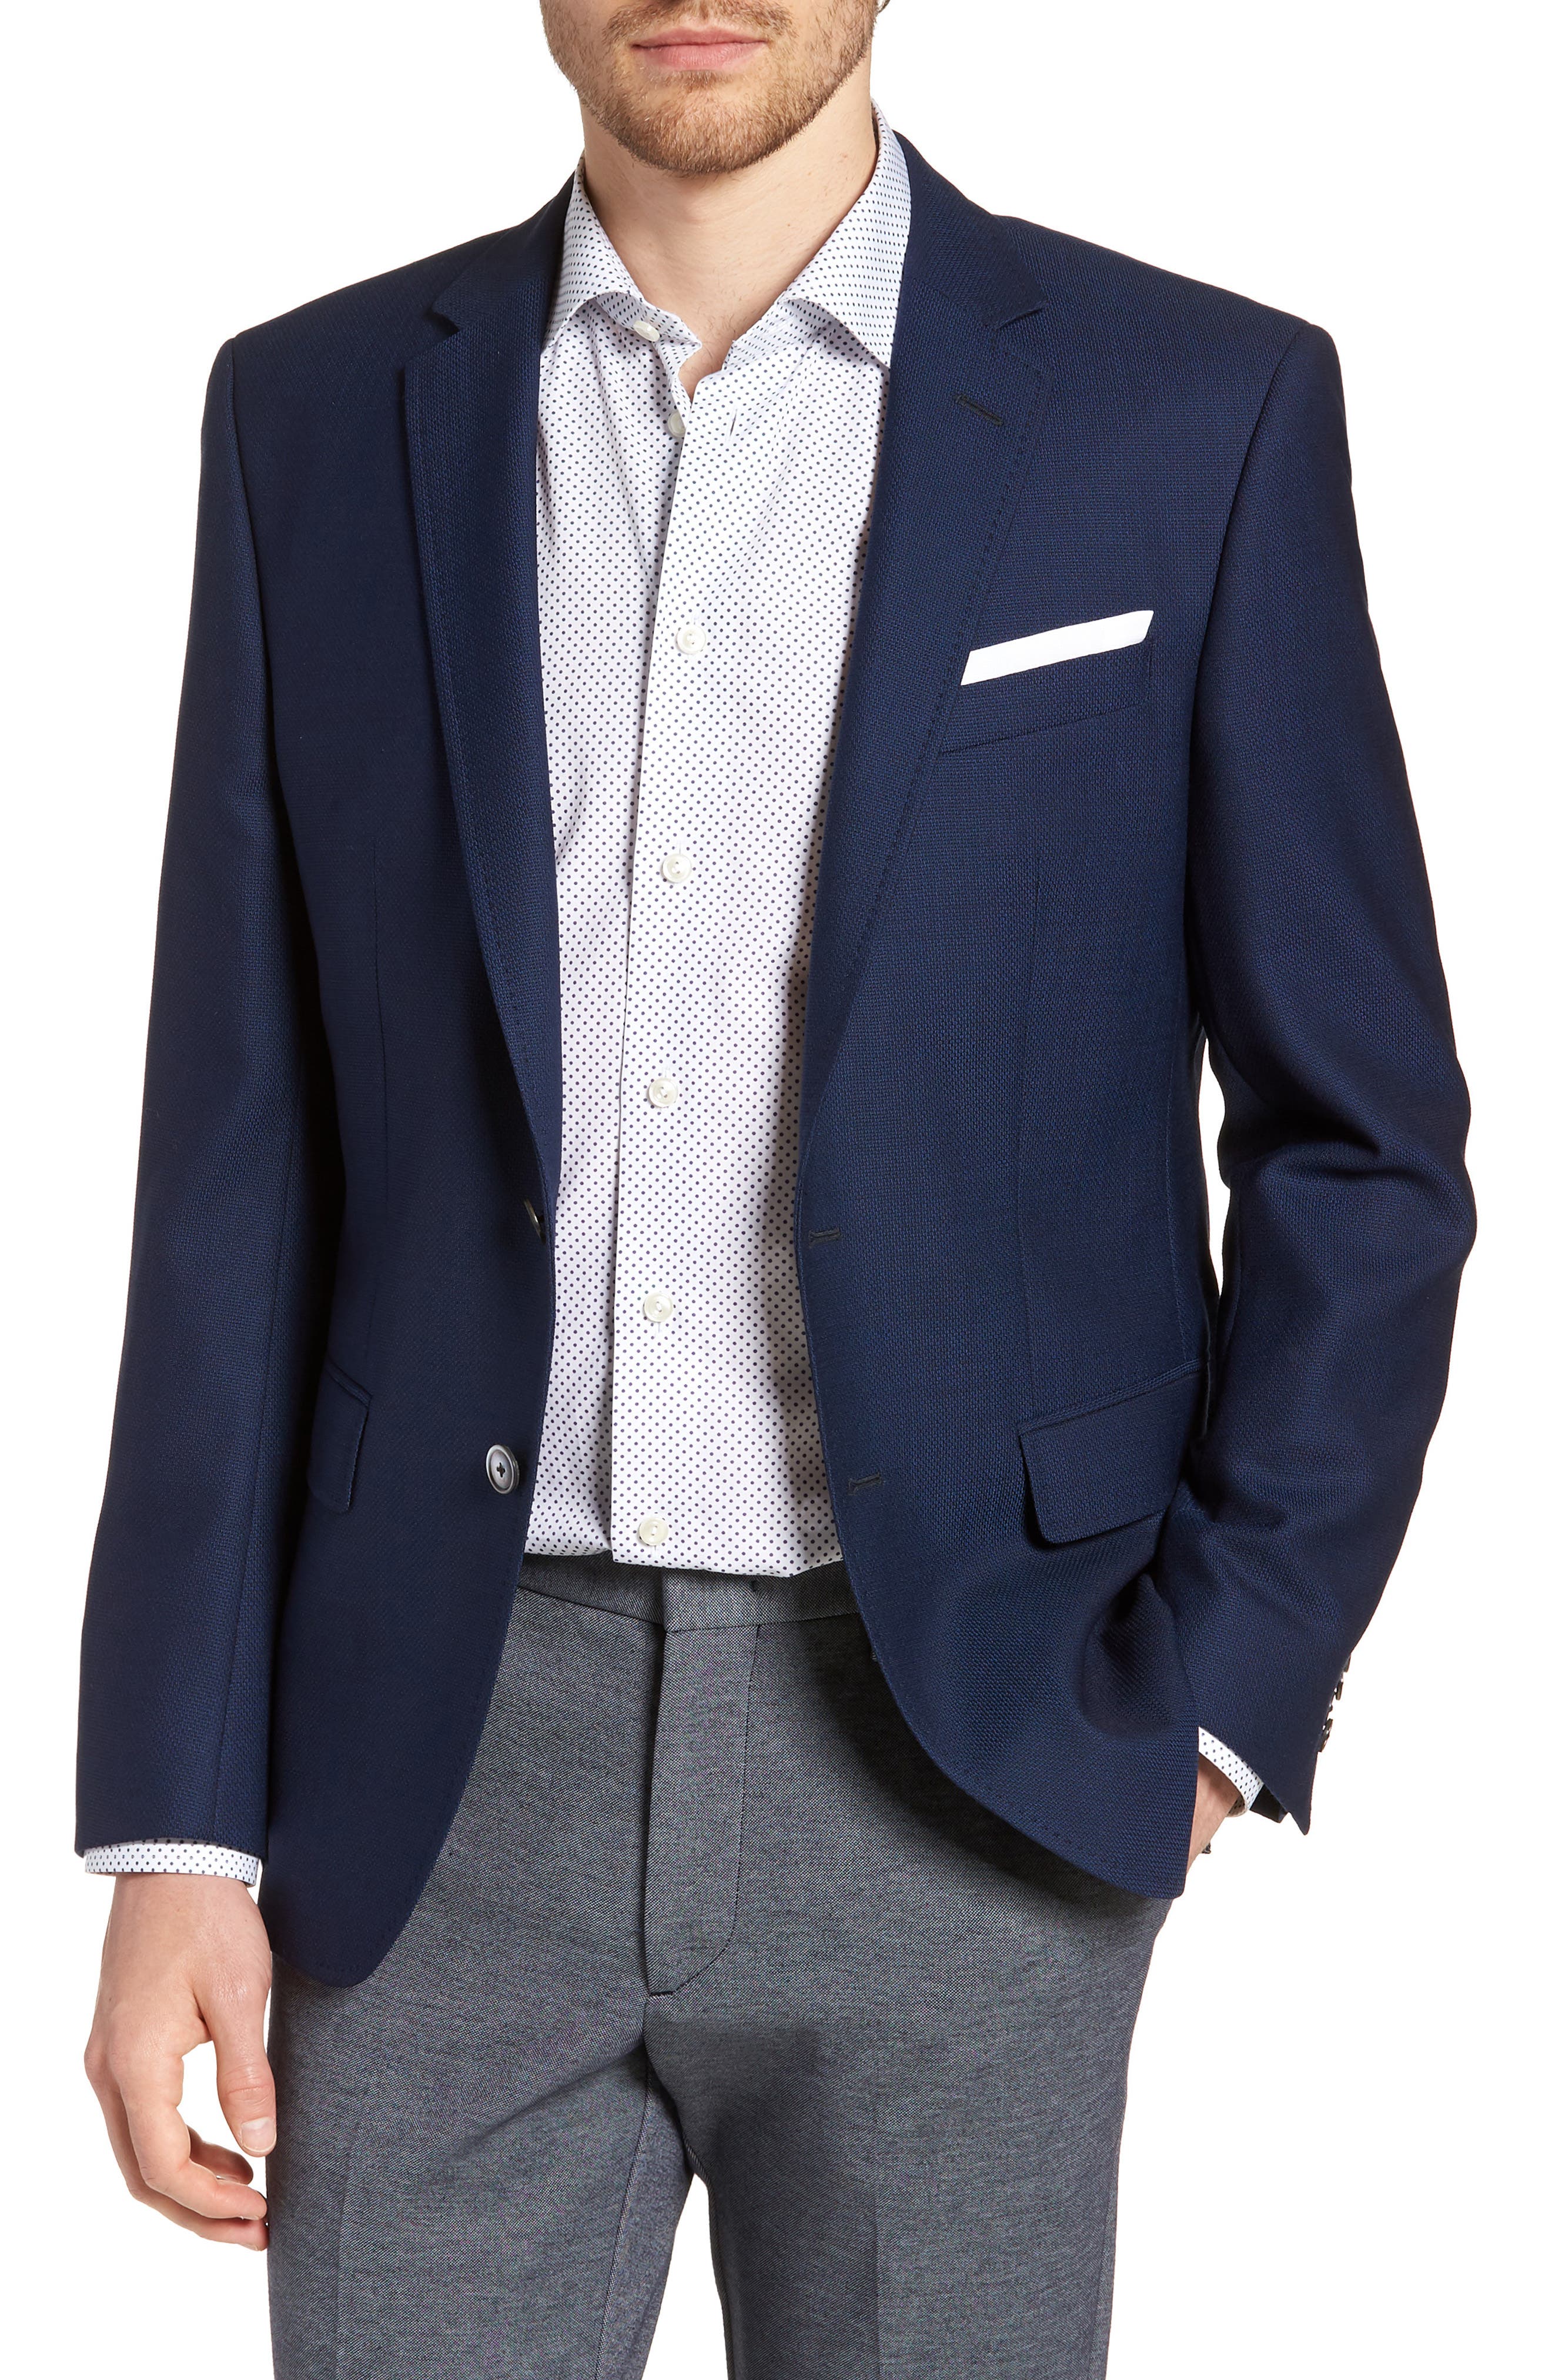 WUAI-Men Casual Suit Jackets Lightweight Linen Tailored Blazer One Button Business Sport Coat Outwear Tops 